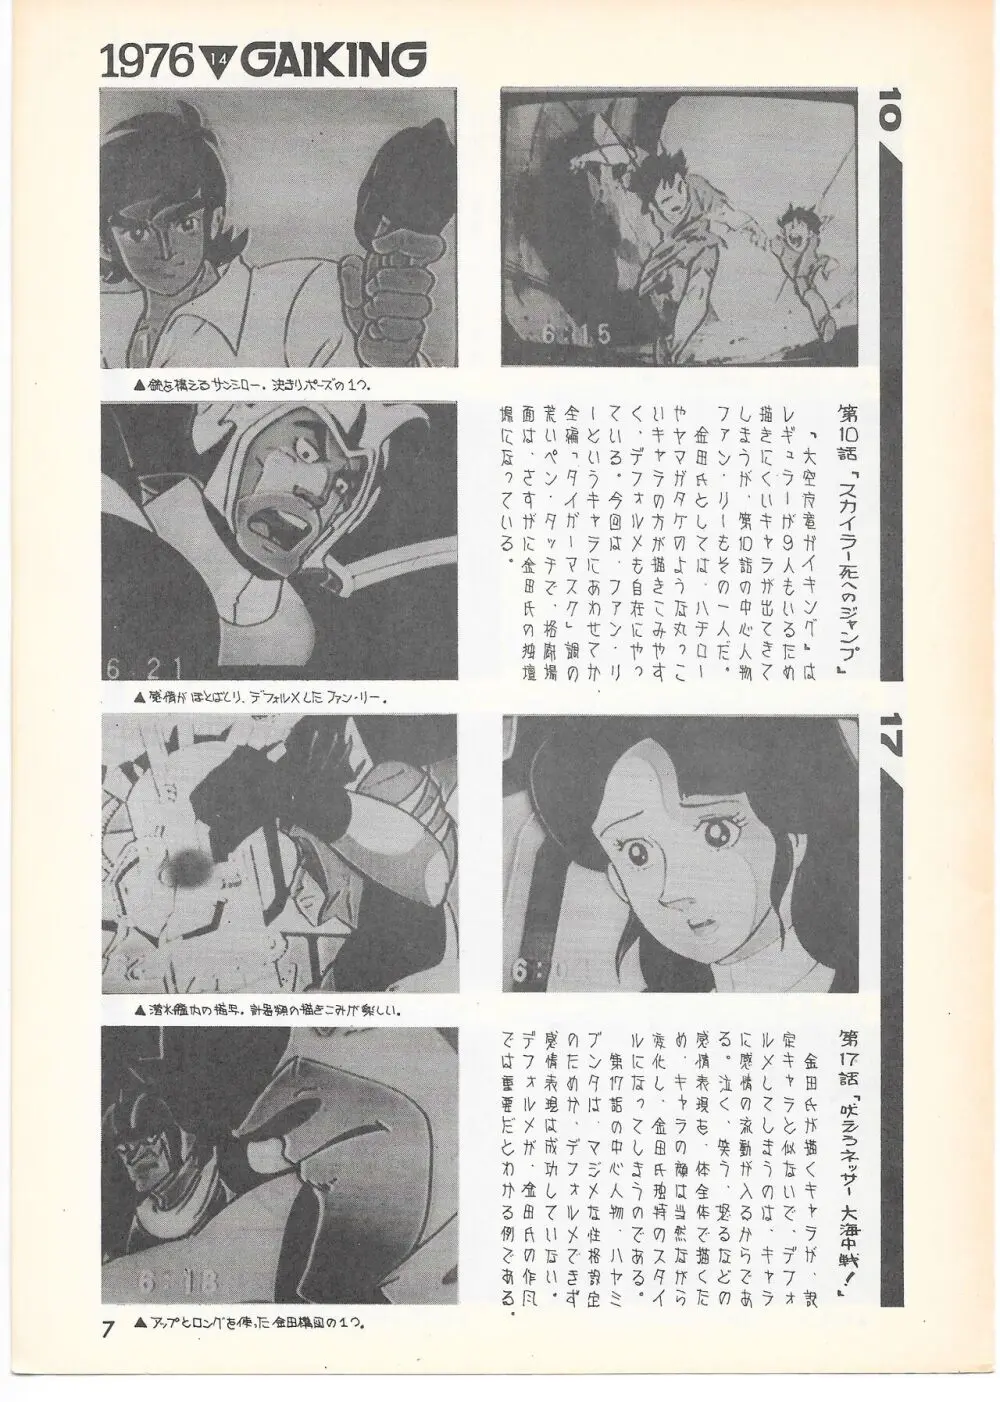 THE ANIMATOR 1 金田伊功特集号 6ページ